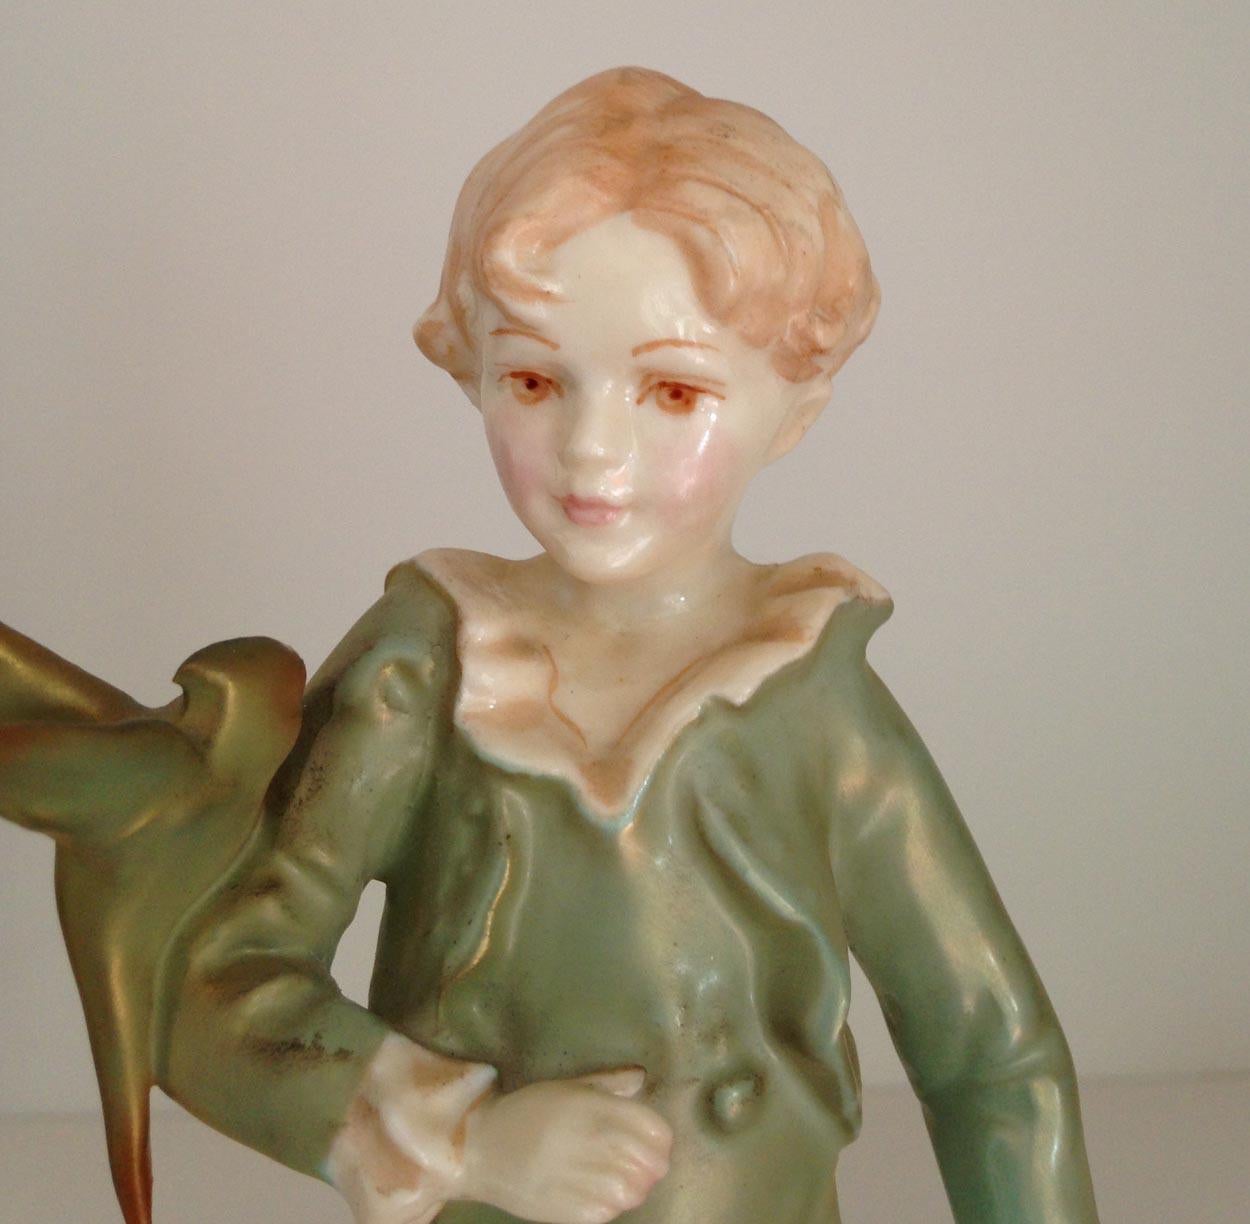 Figurine Royal Worcester garçon perruche, fabriquée en Angleterre. La figurine représente un jeune garçon avec une perruche perchée sur son bras droit. Le garçon est habillé d'une veste et d'une culotte vertes et de chaussures à boucles.

Ce motif